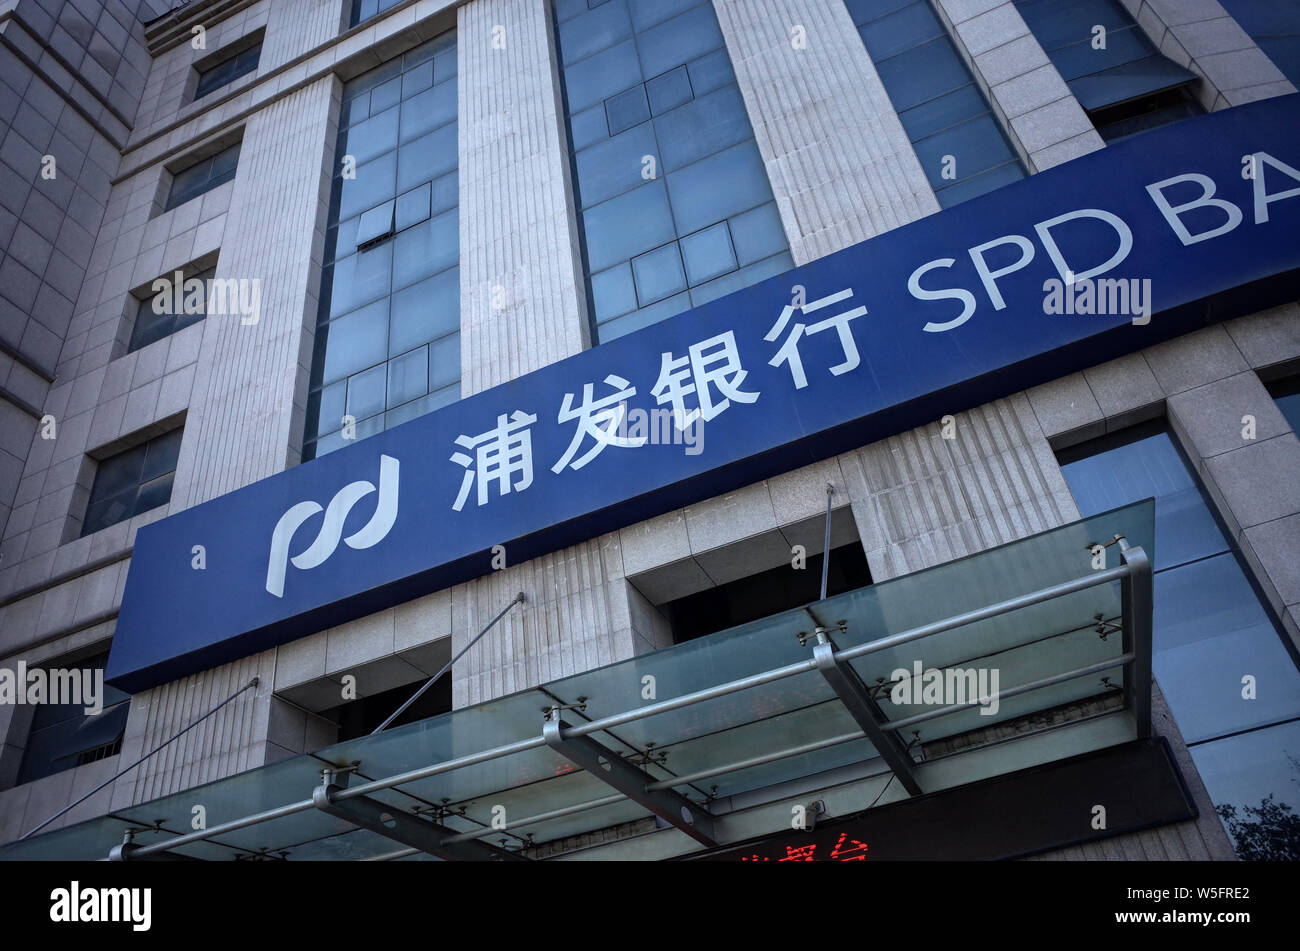 Спд банк. Банк Shanghai Pudong Development Bank. Shanghai Pudong Development Bank логотип. Реквизиты банка Shanghai Pudong Development Bank. Шанхайский банк в одежде.